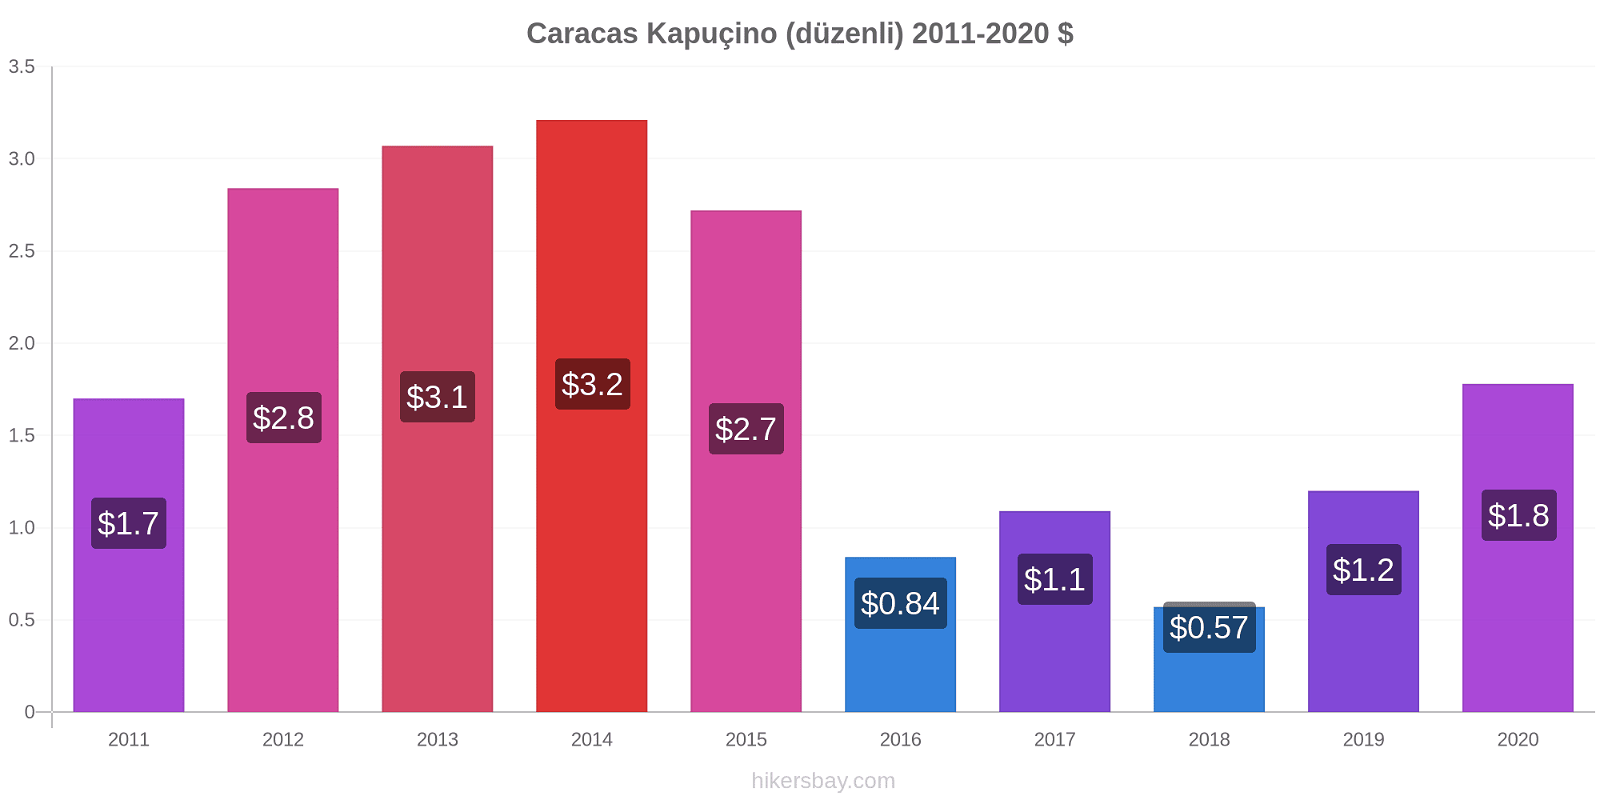 Caracas fiyat değişiklikleri Kapuçino (düzenli) hikersbay.com